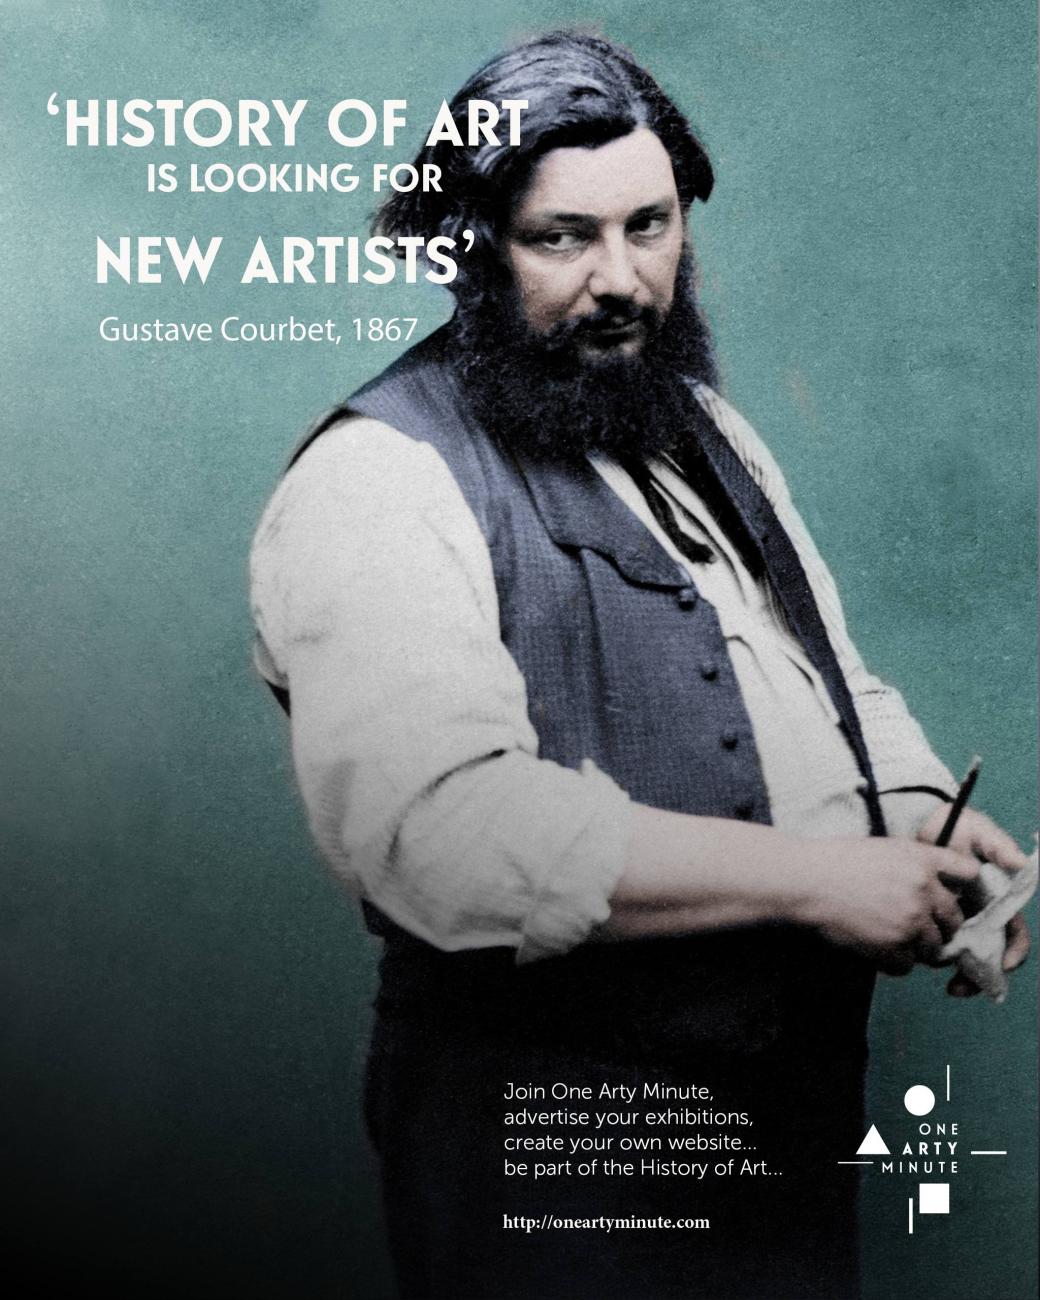 Gustave Courbet, Rejoignez One Arty Minute, annoncez vos expositions, vendez vos oeuvres et créez votre catalogue raisonné